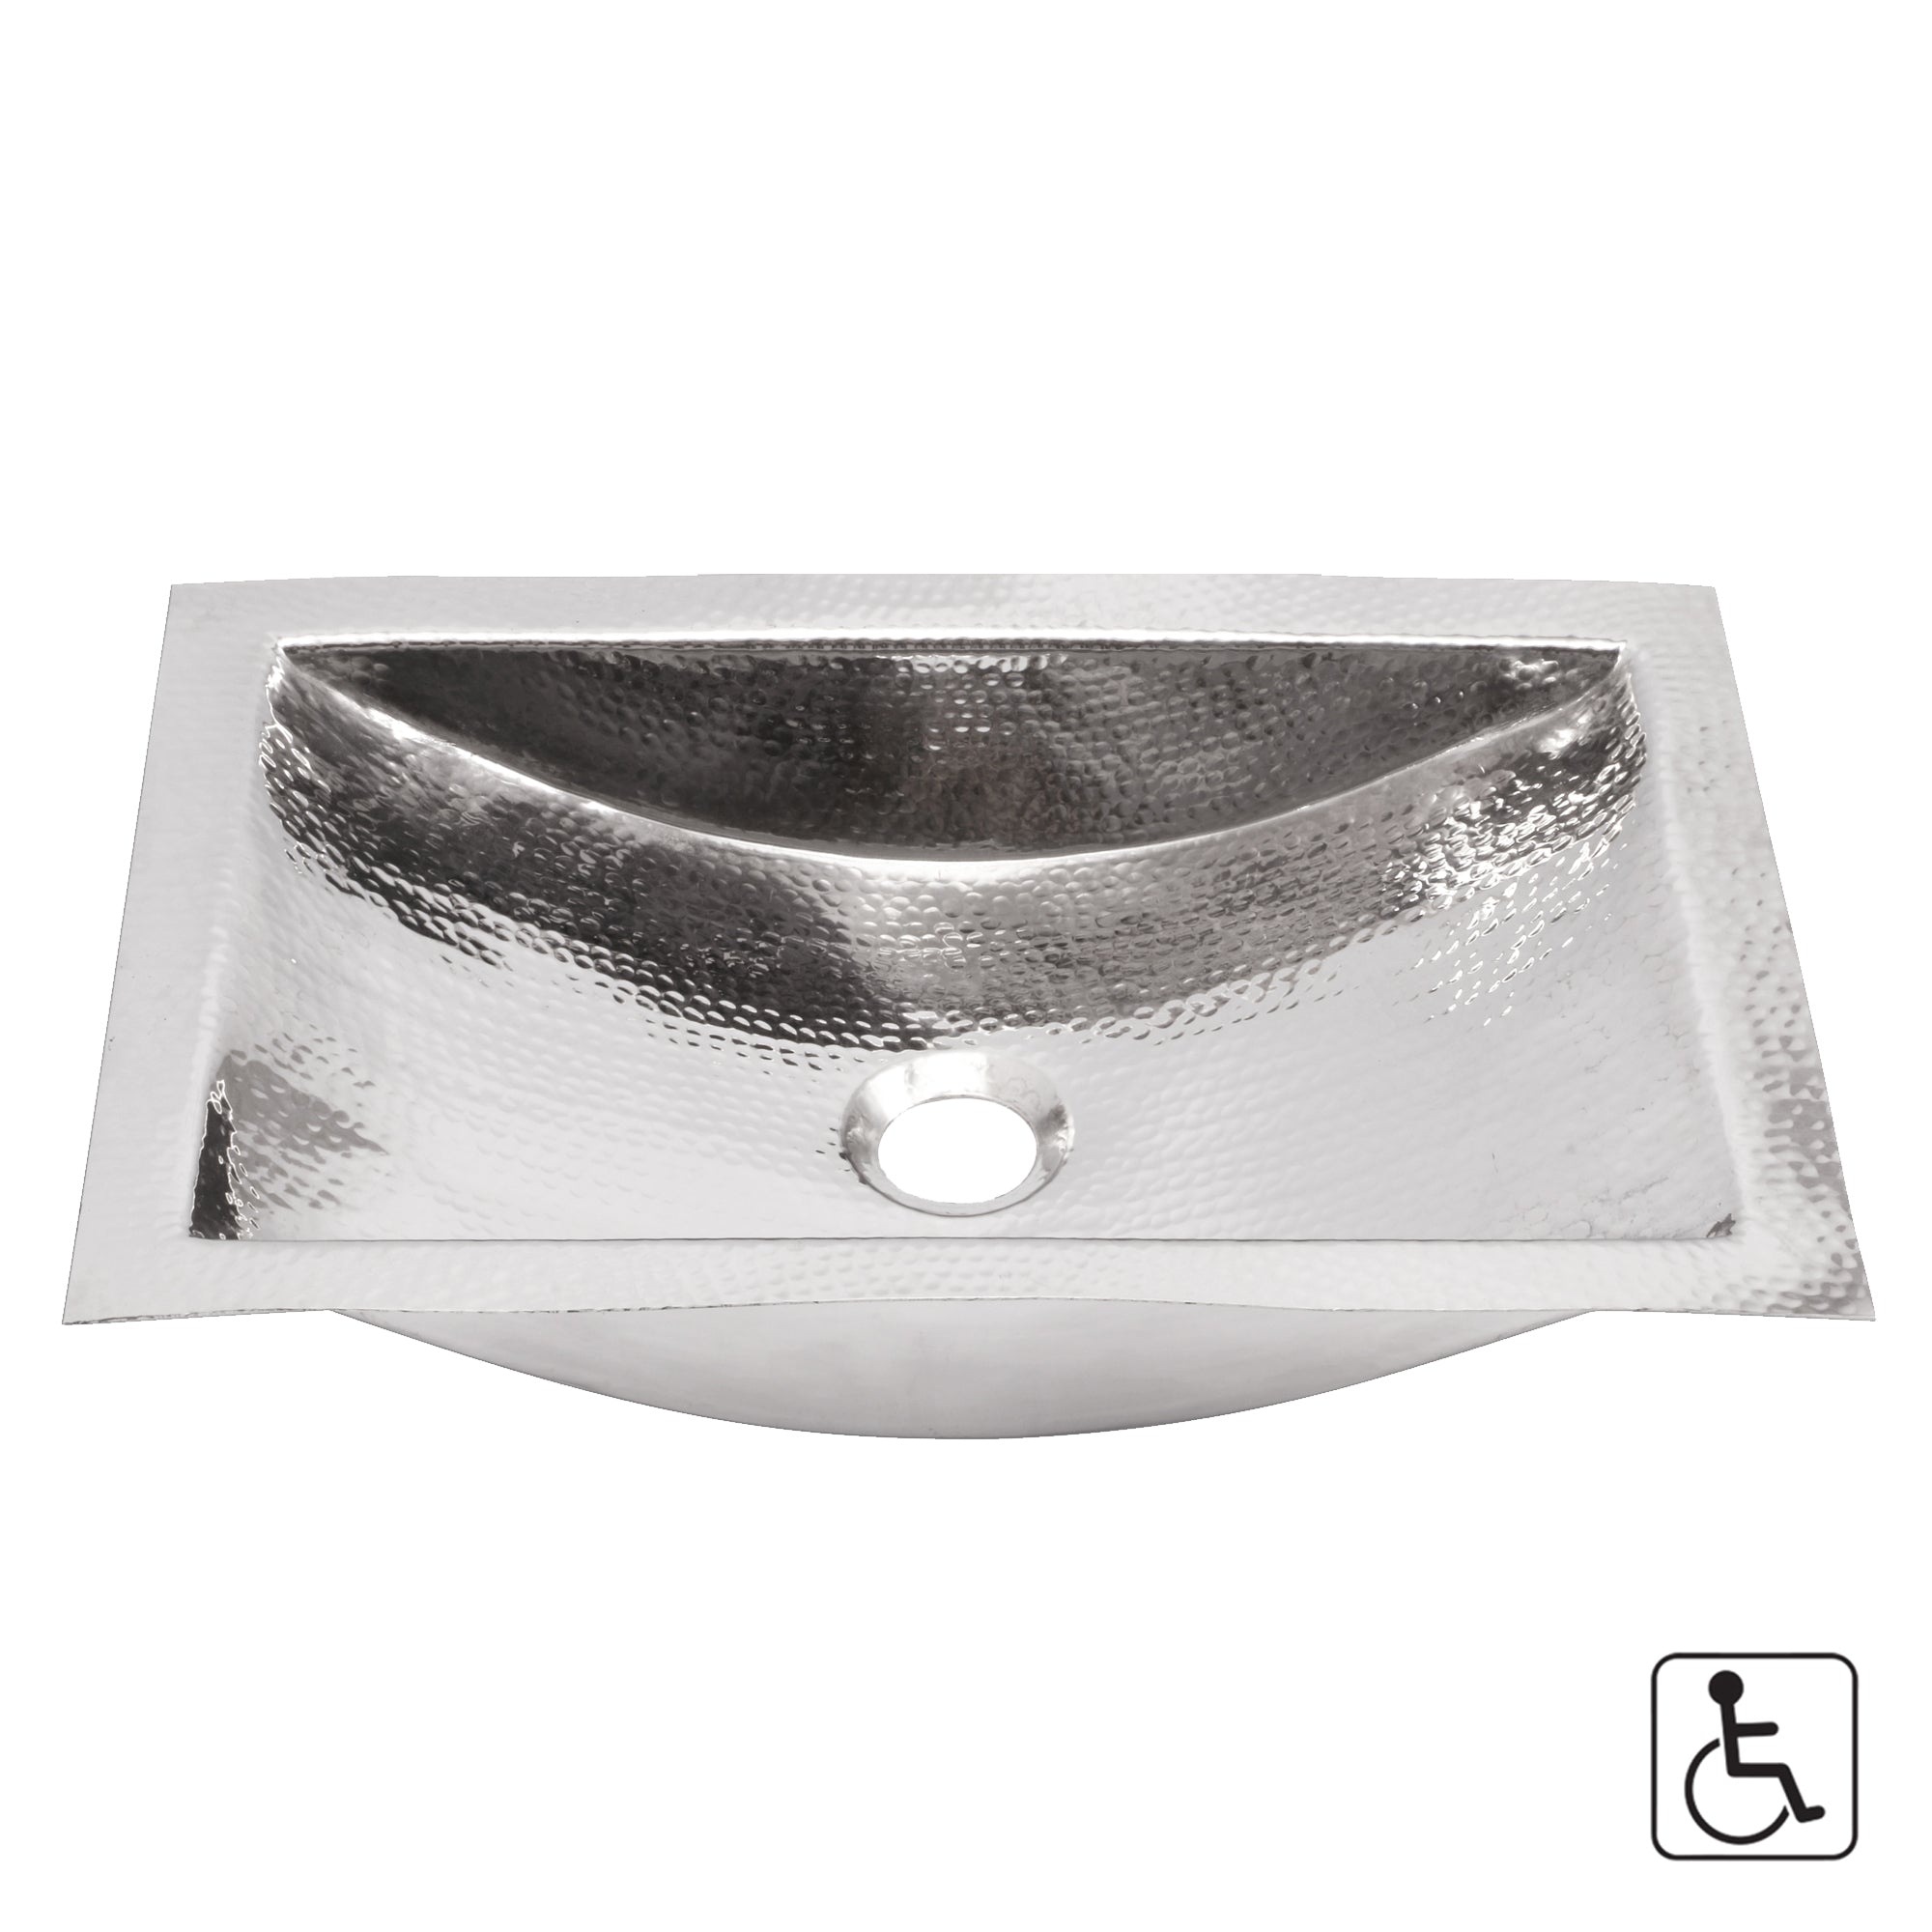 silver bathroom sink